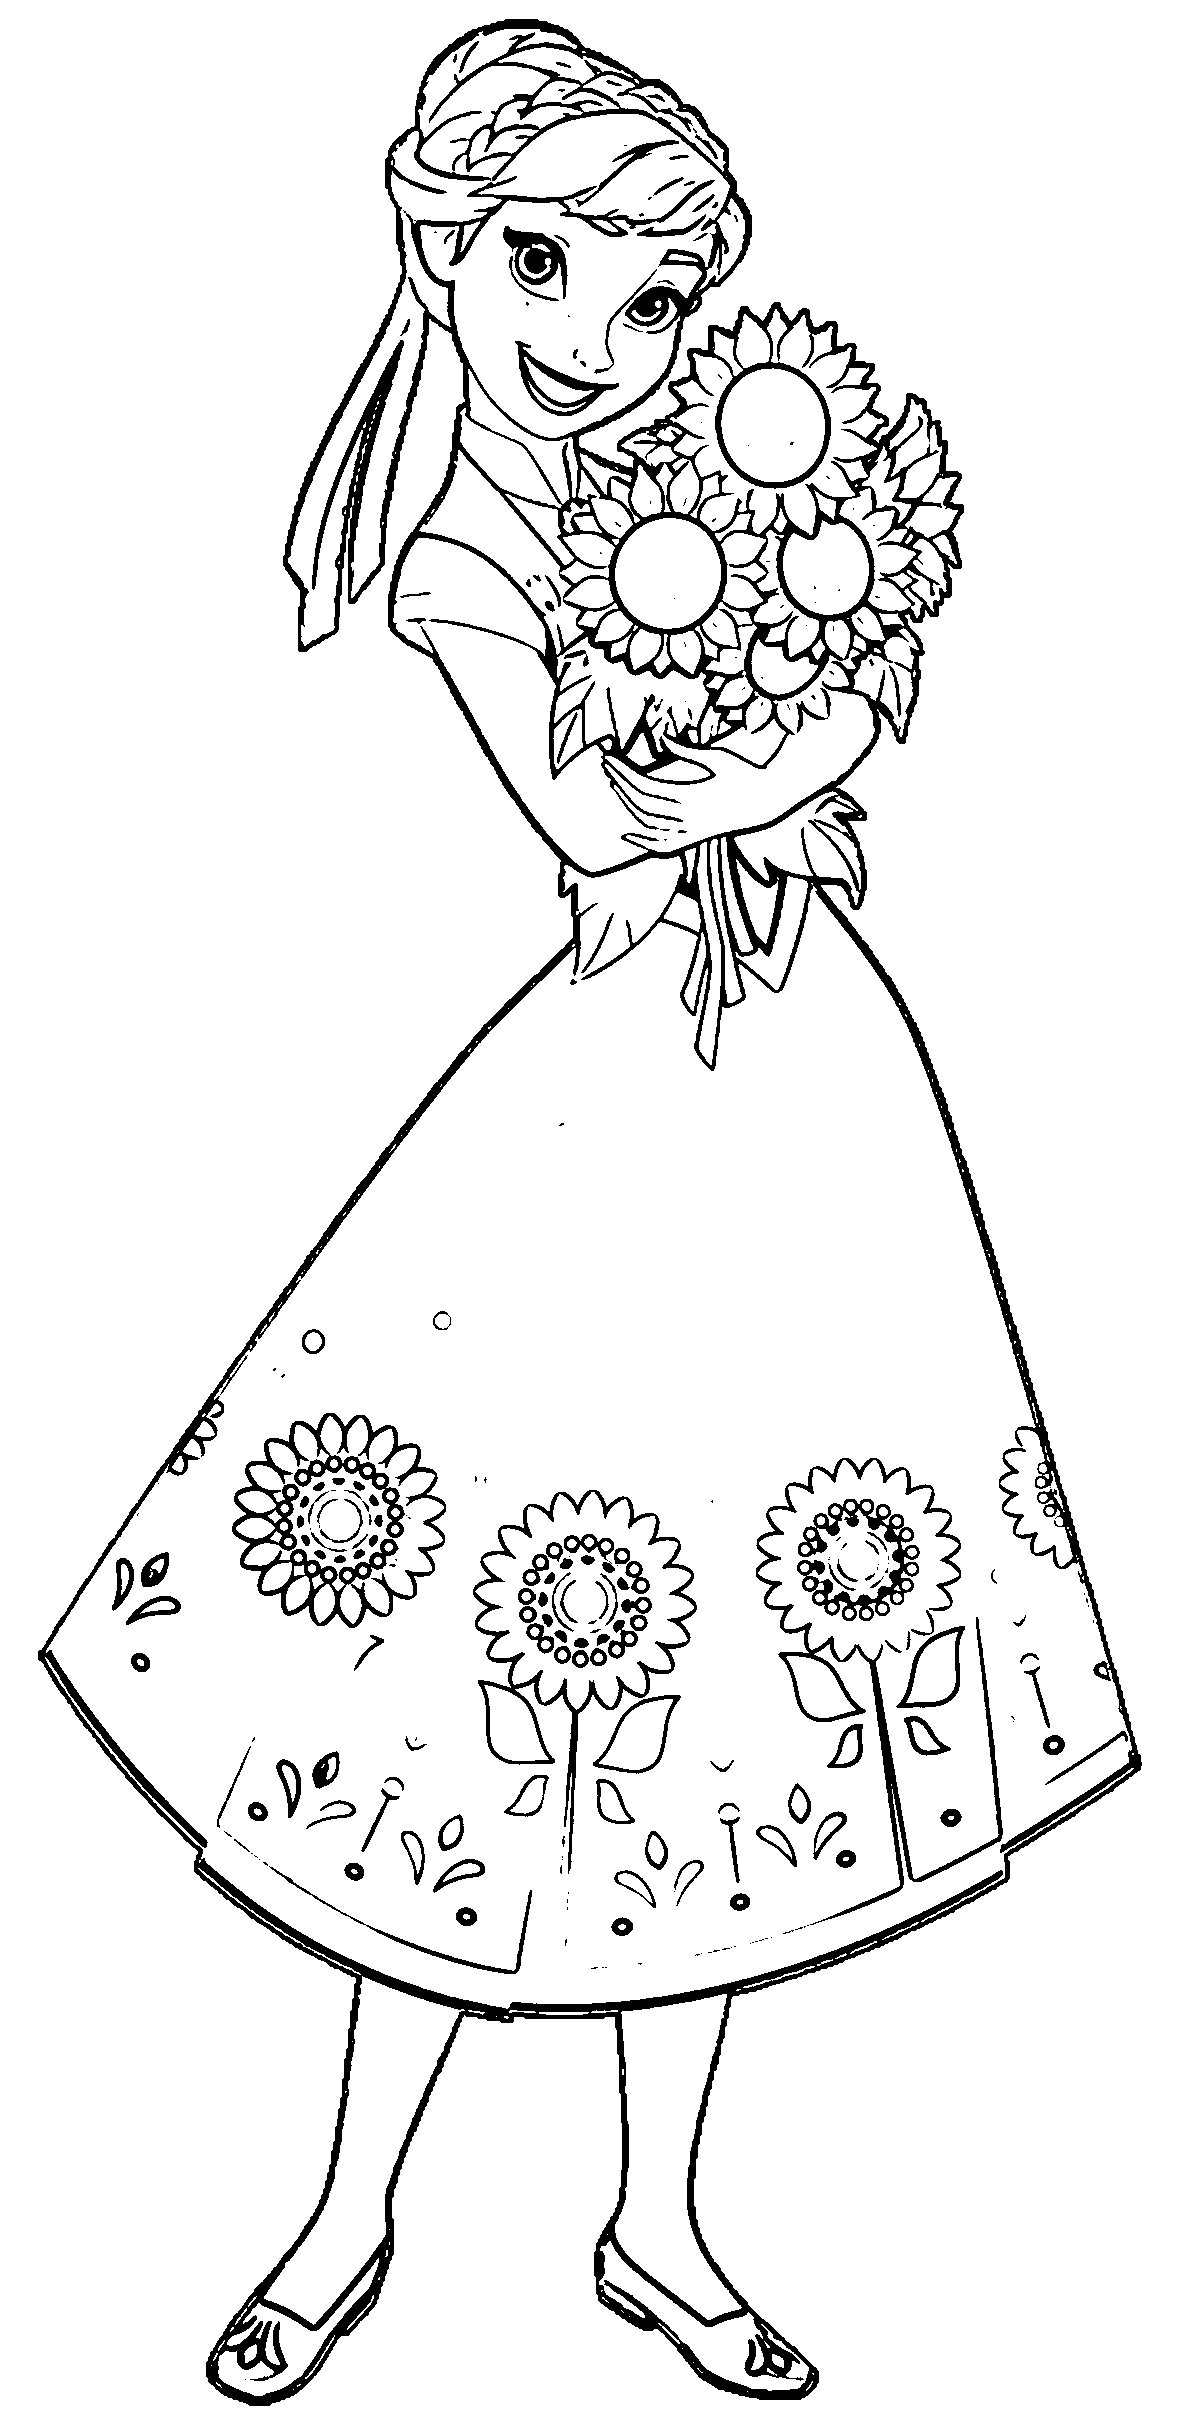 Anna mit einem schönen Blumenstrauß